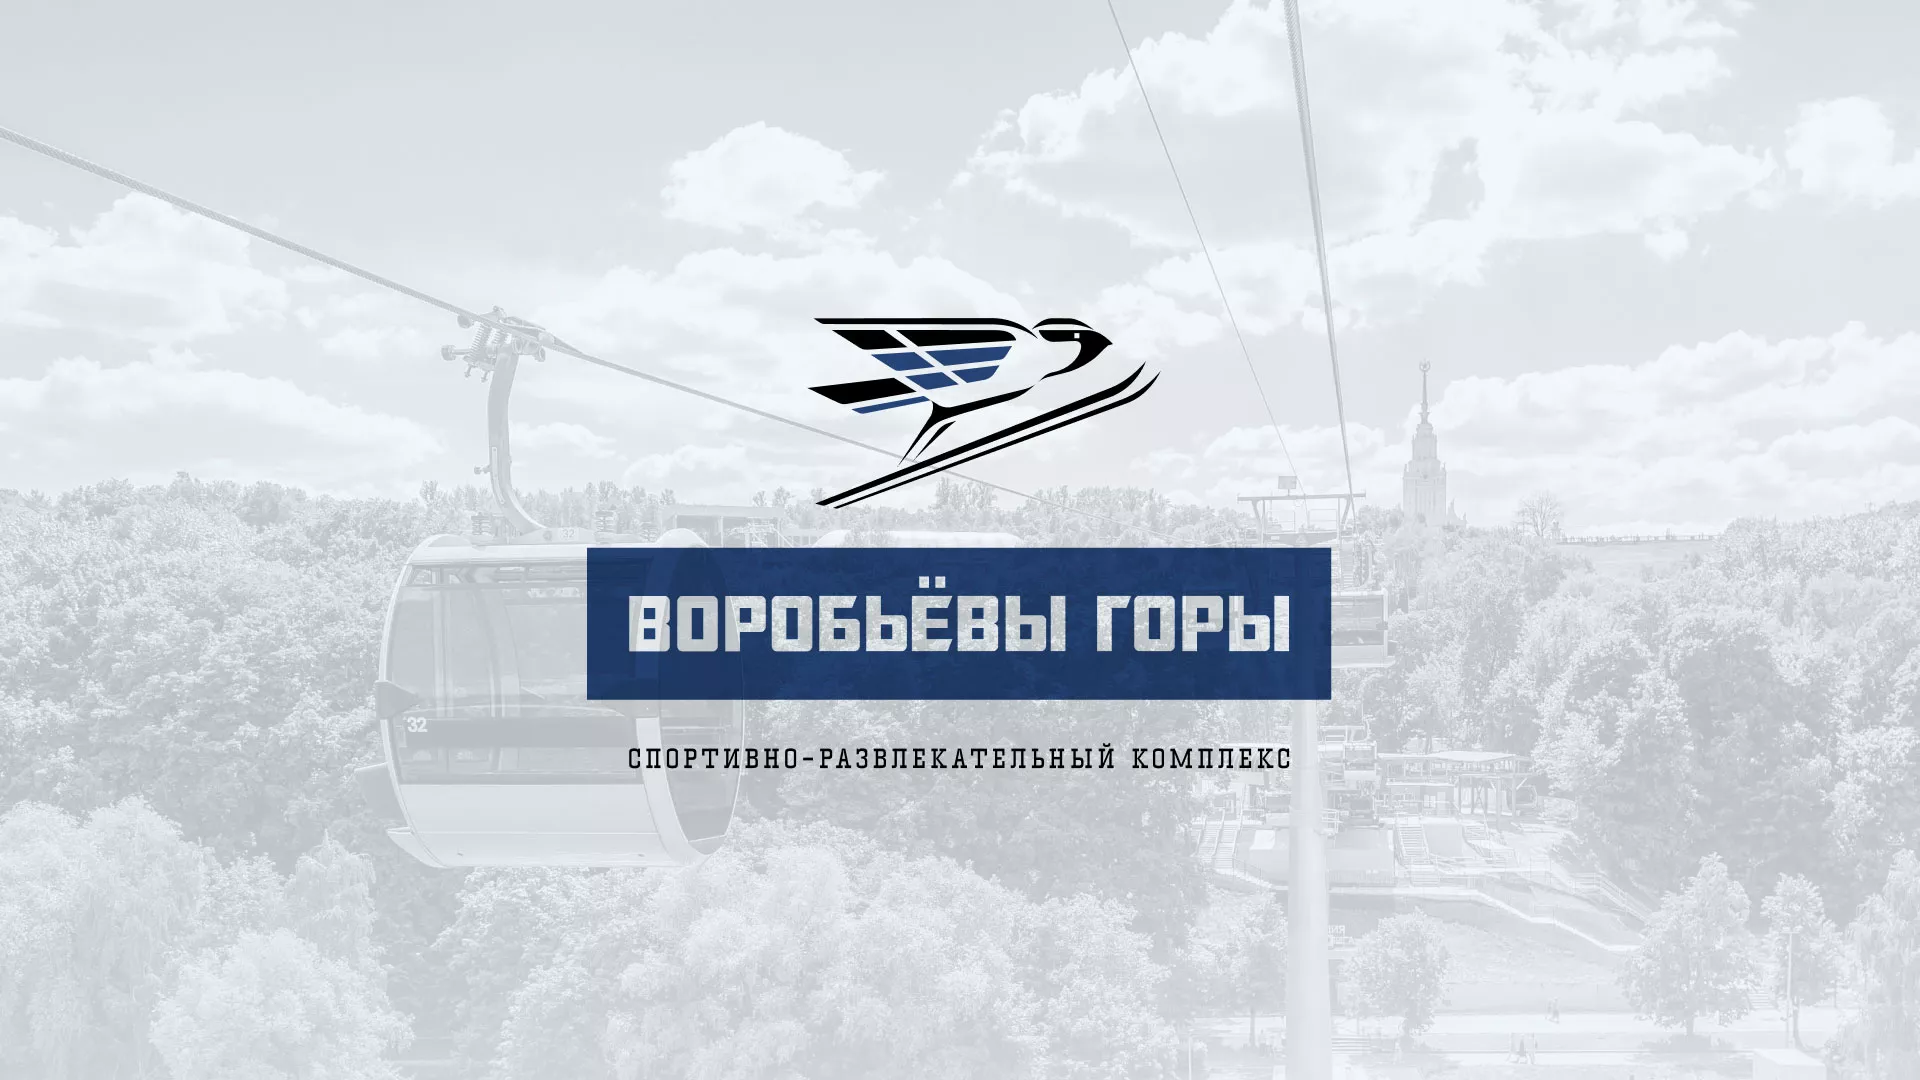 Разработка сайта в Бородино для спортивно-развлекательного комплекса «Воробьёвы горы»